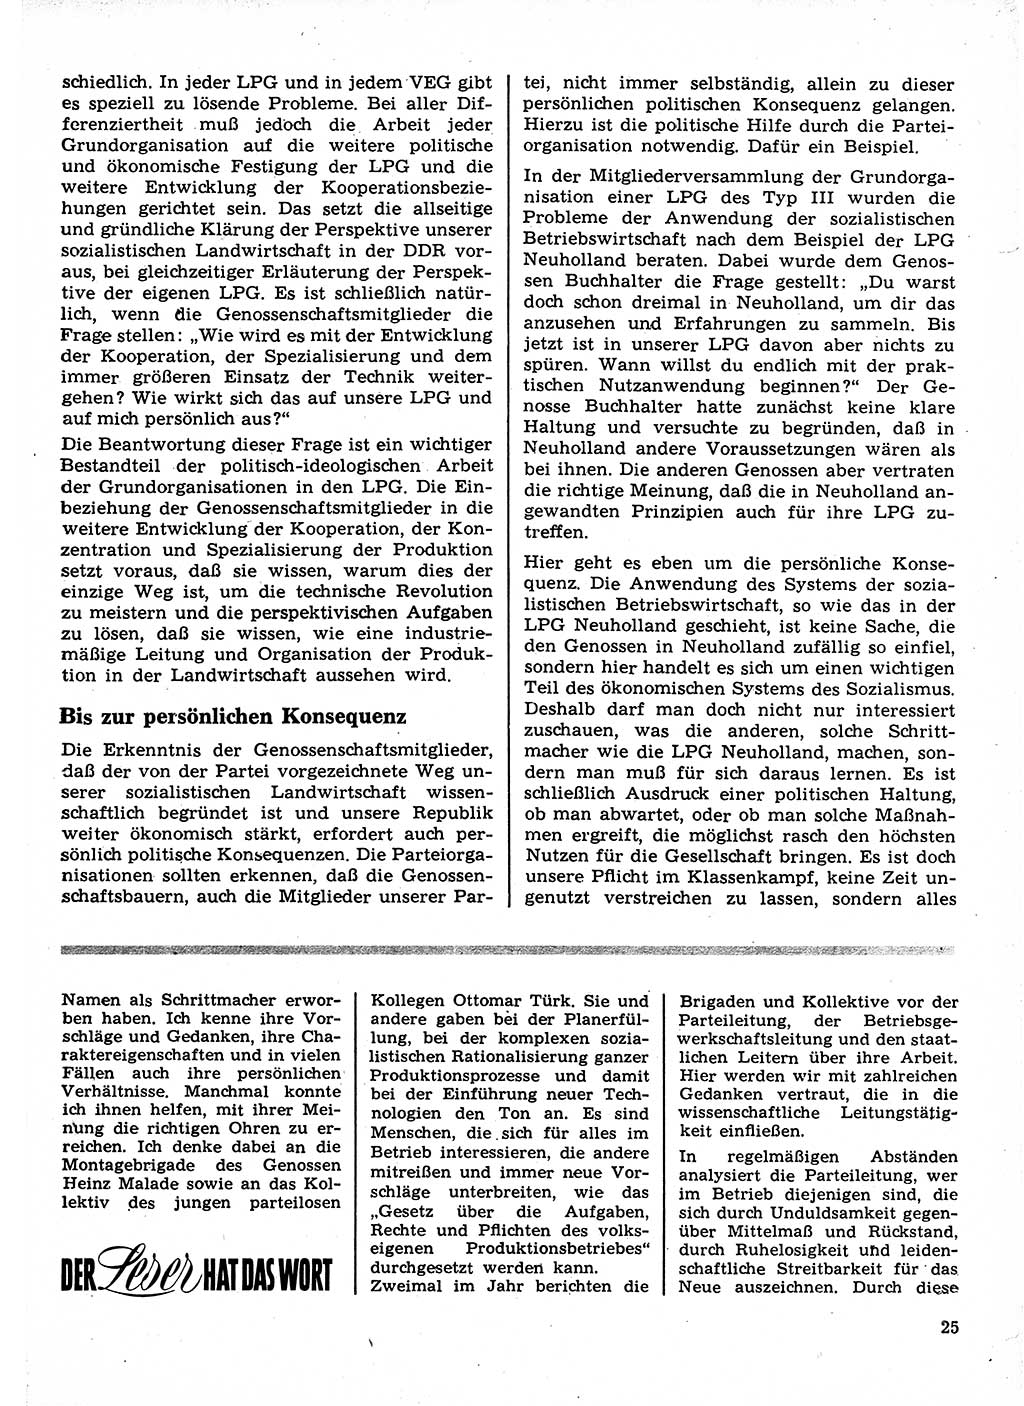 Neuer Weg (NW), Organ des Zentralkomitees (ZK) der SED (Sozialistische Einheitspartei Deutschlands) für Fragen des Parteilebens, 23. Jahrgang [Deutsche Demokratische Republik (DDR)] 1968, Seite 25 (NW ZK SED DDR 1968, S. 25)